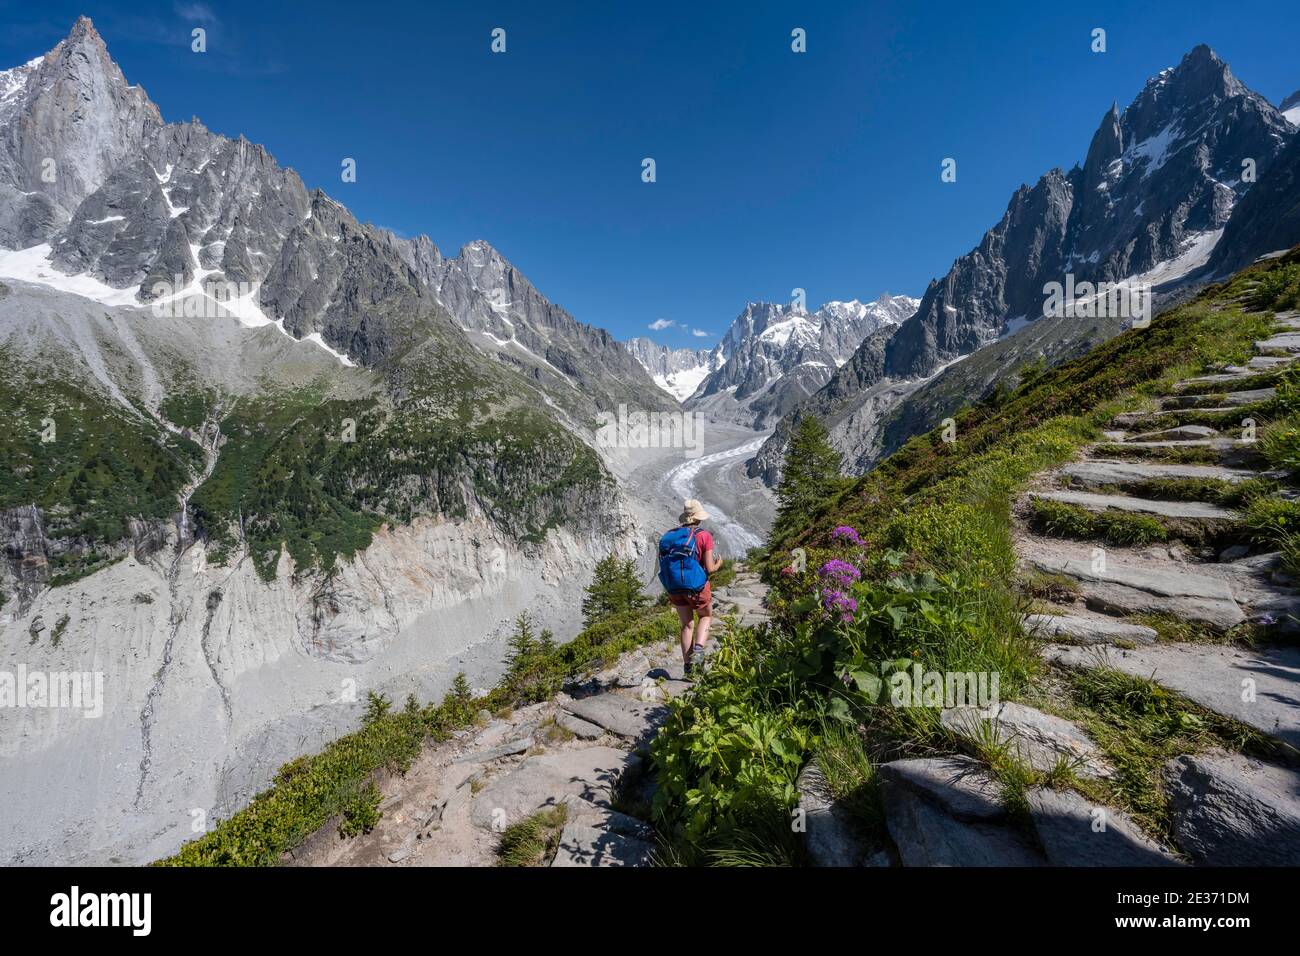 Alpinista sul sentiero escursionistico, Grand Balcon Nord, lingua del ghiacciaio Mer de Glace, dietro Grandes Jorasses, massiccio del Monte Bianco, Chamonix, Francia Foto Stock